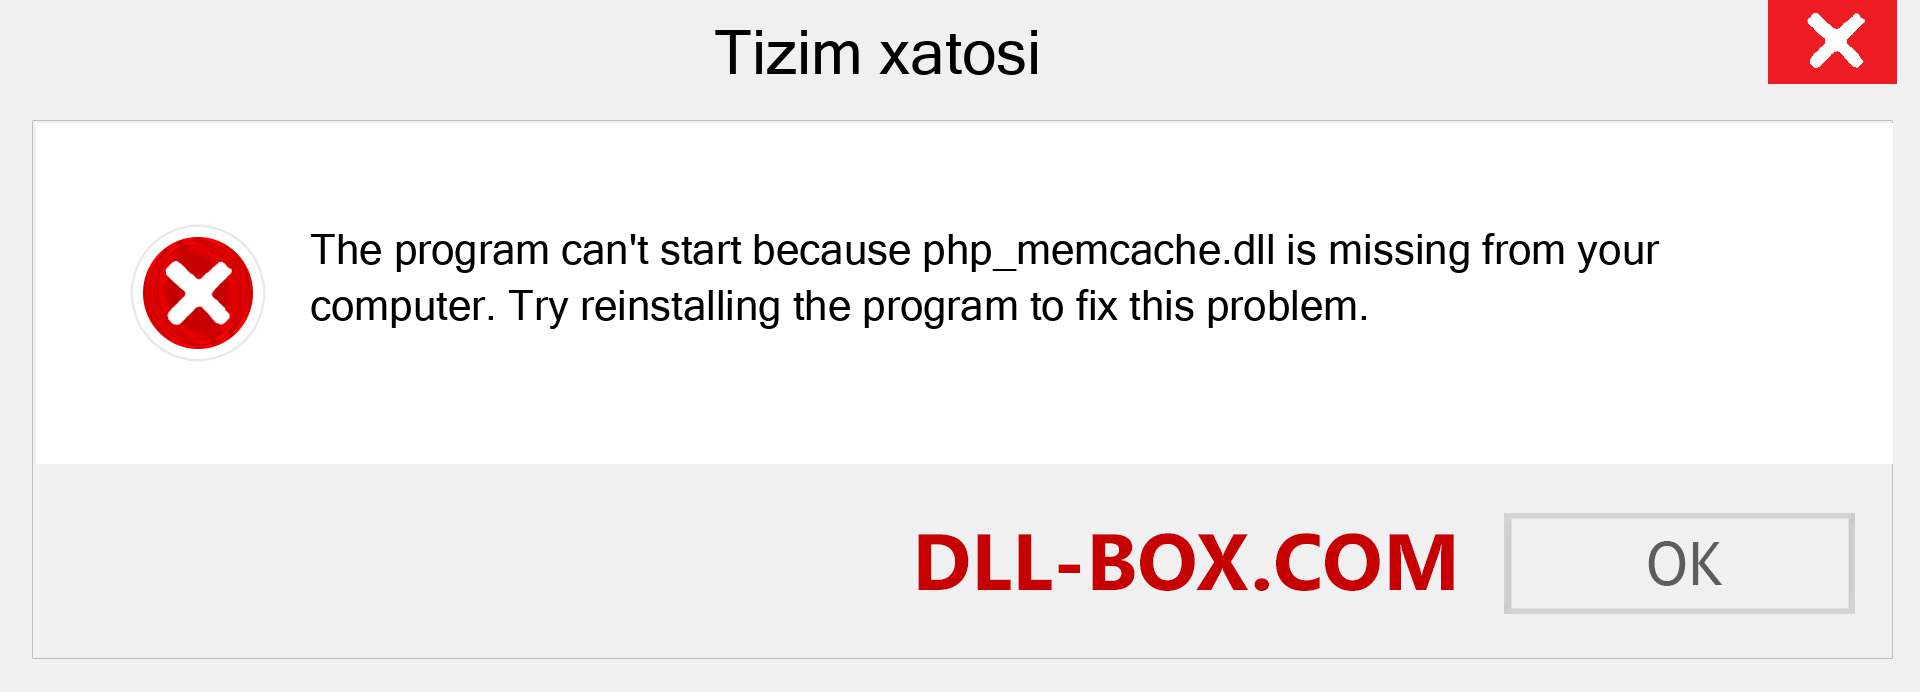 php_memcache.dll fayli yo'qolganmi?. Windows 7, 8, 10 uchun yuklab olish - Windowsda php_memcache dll etishmayotgan xatoni tuzating, rasmlar, rasmlar